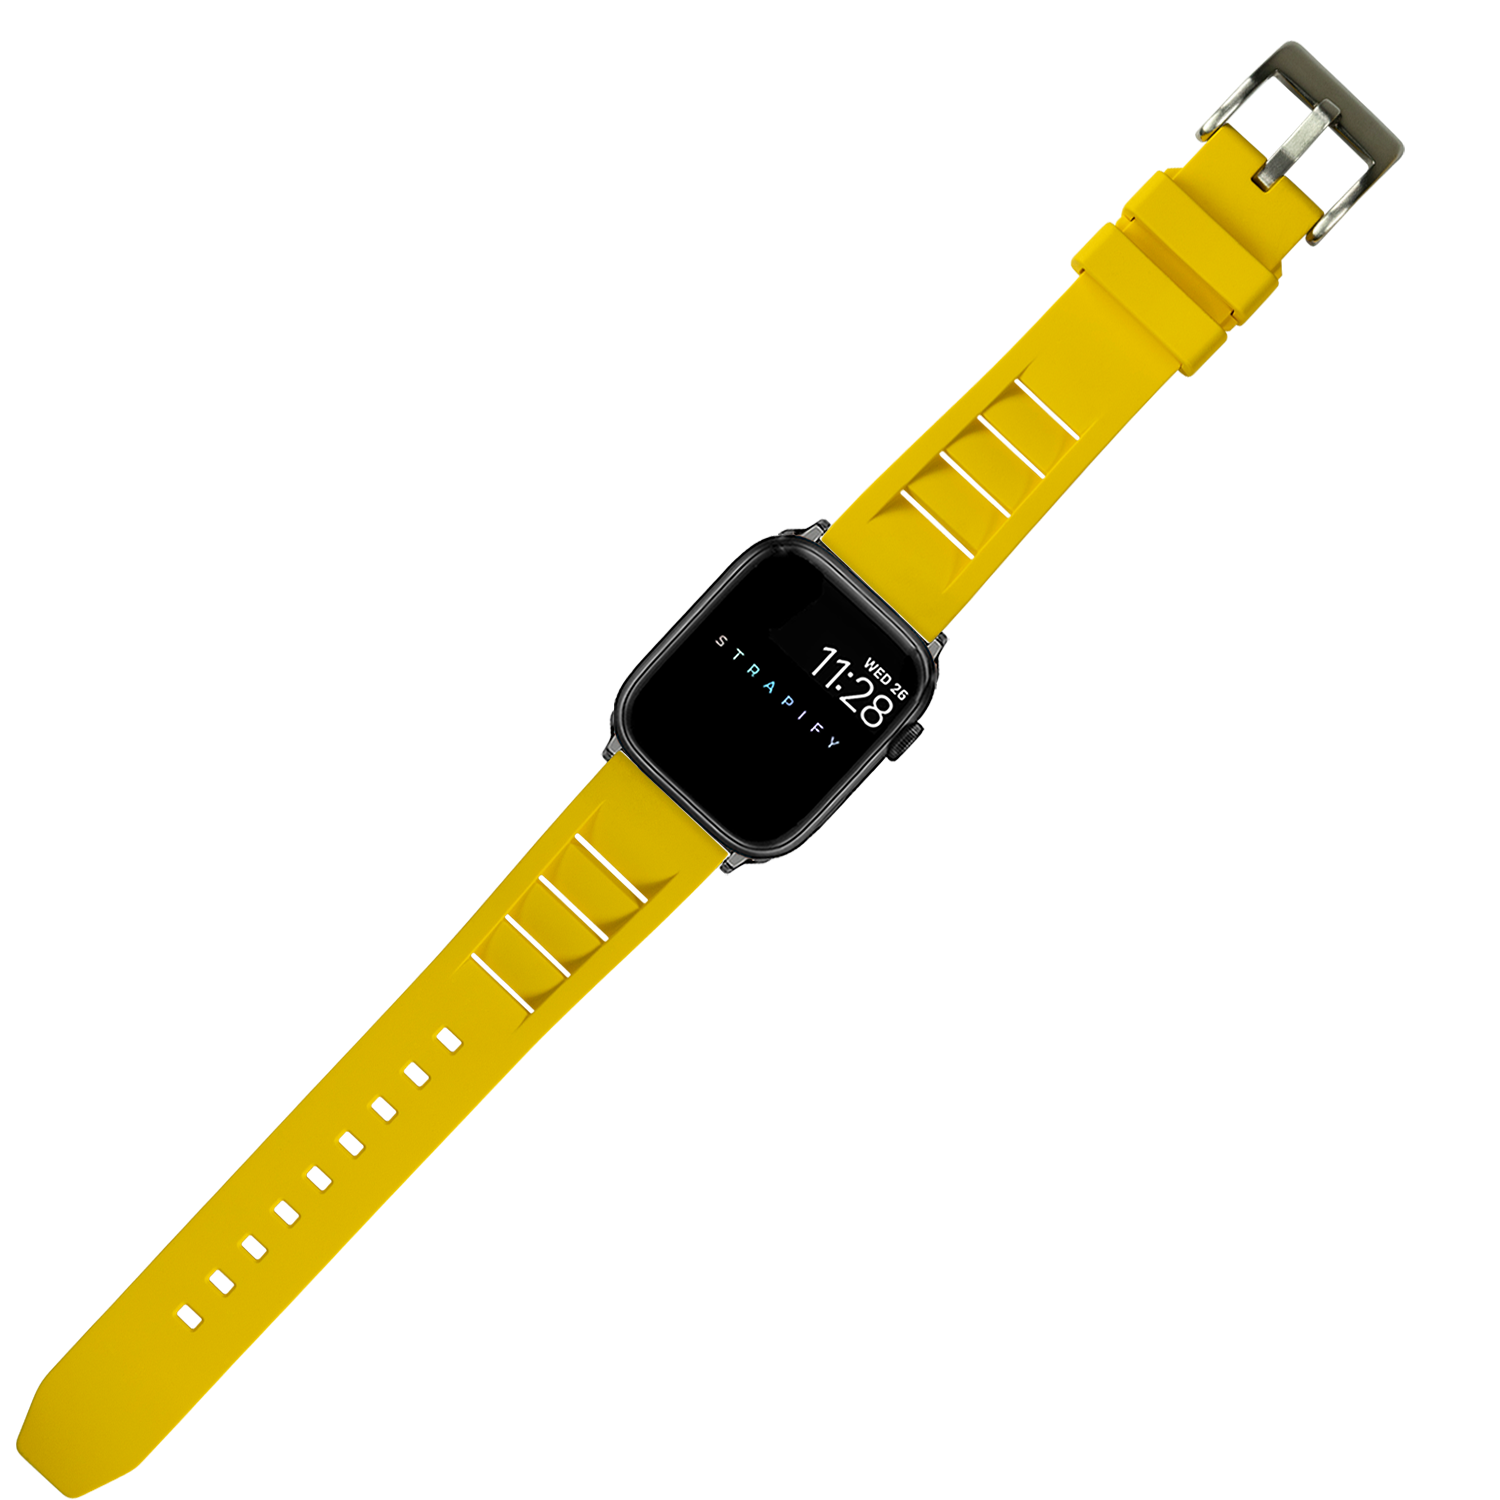 [Apple Watch] Shark Fin FKM Rubber - Yellow